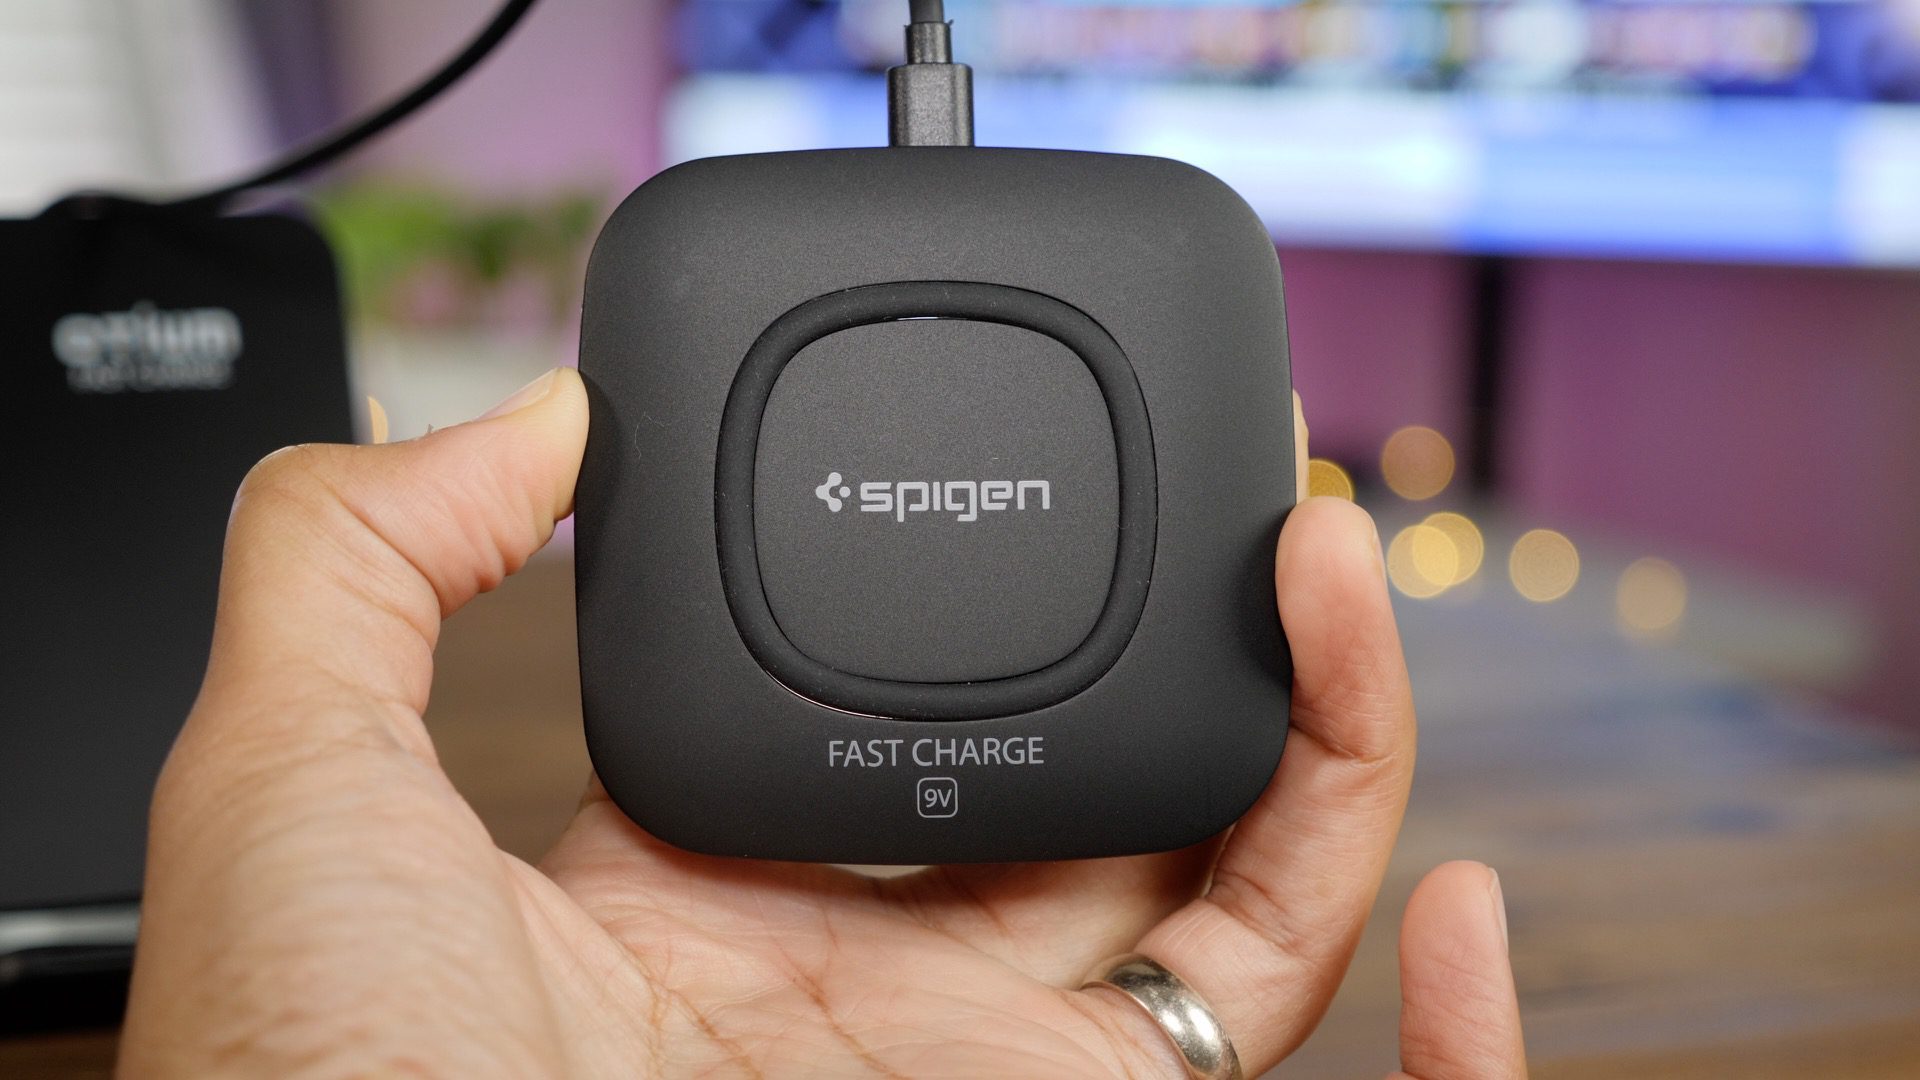 spigen-wireless-charger-iphone-8.jpg